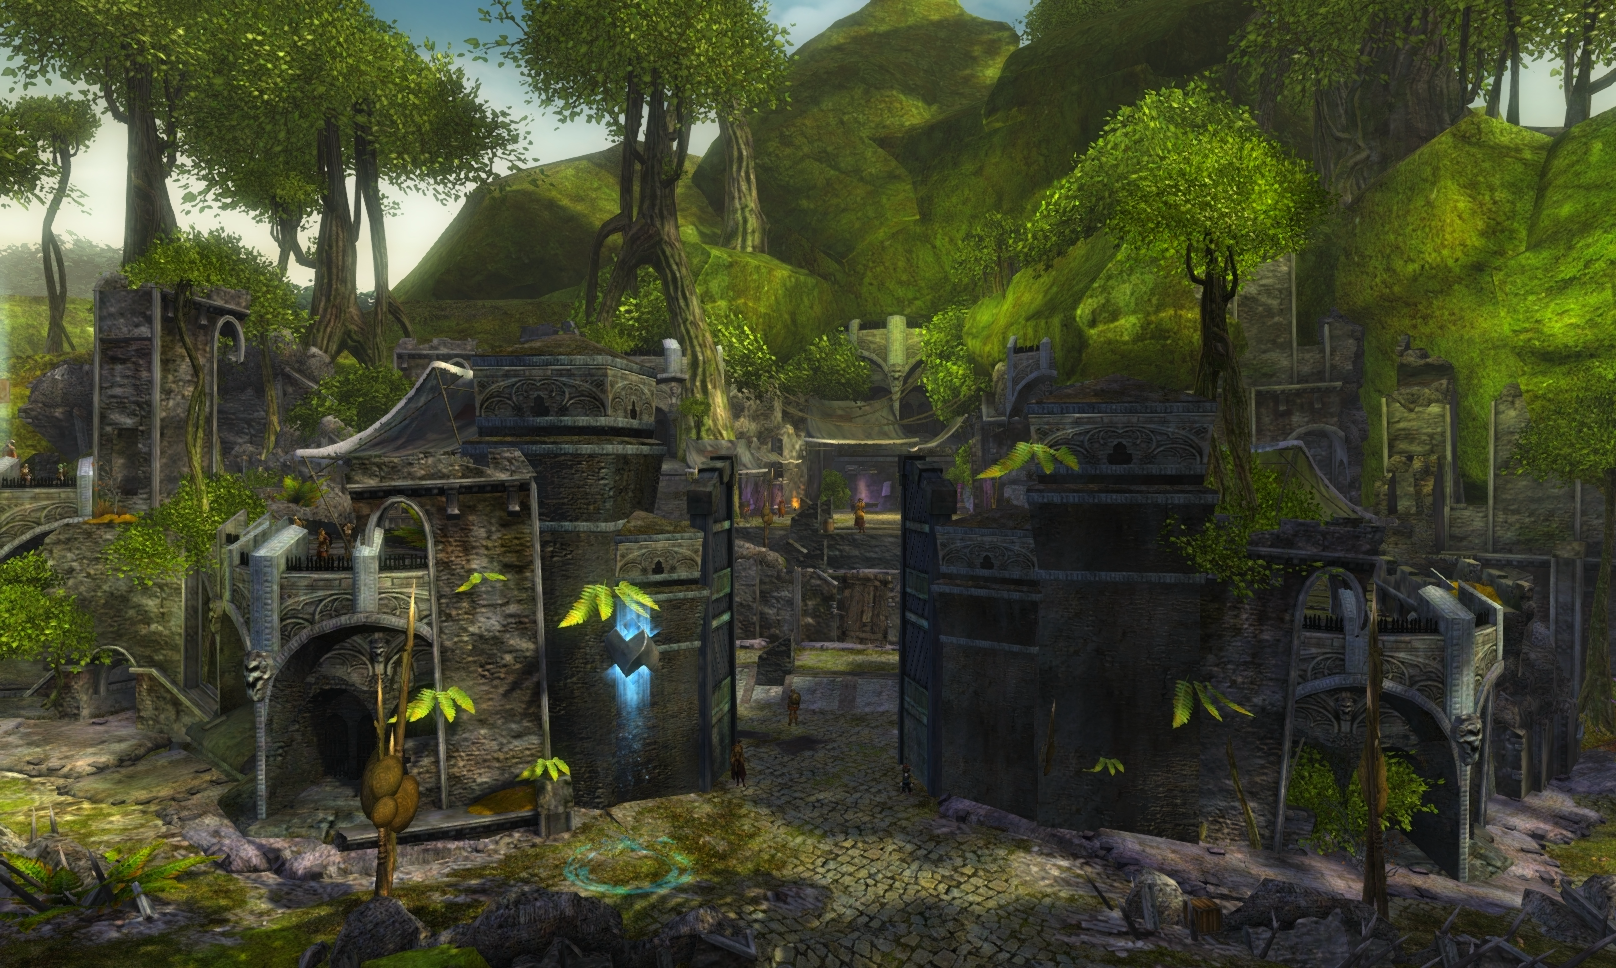 Guild Wars 2 - Vistas in Caledon Forest - 07 Trader's Green